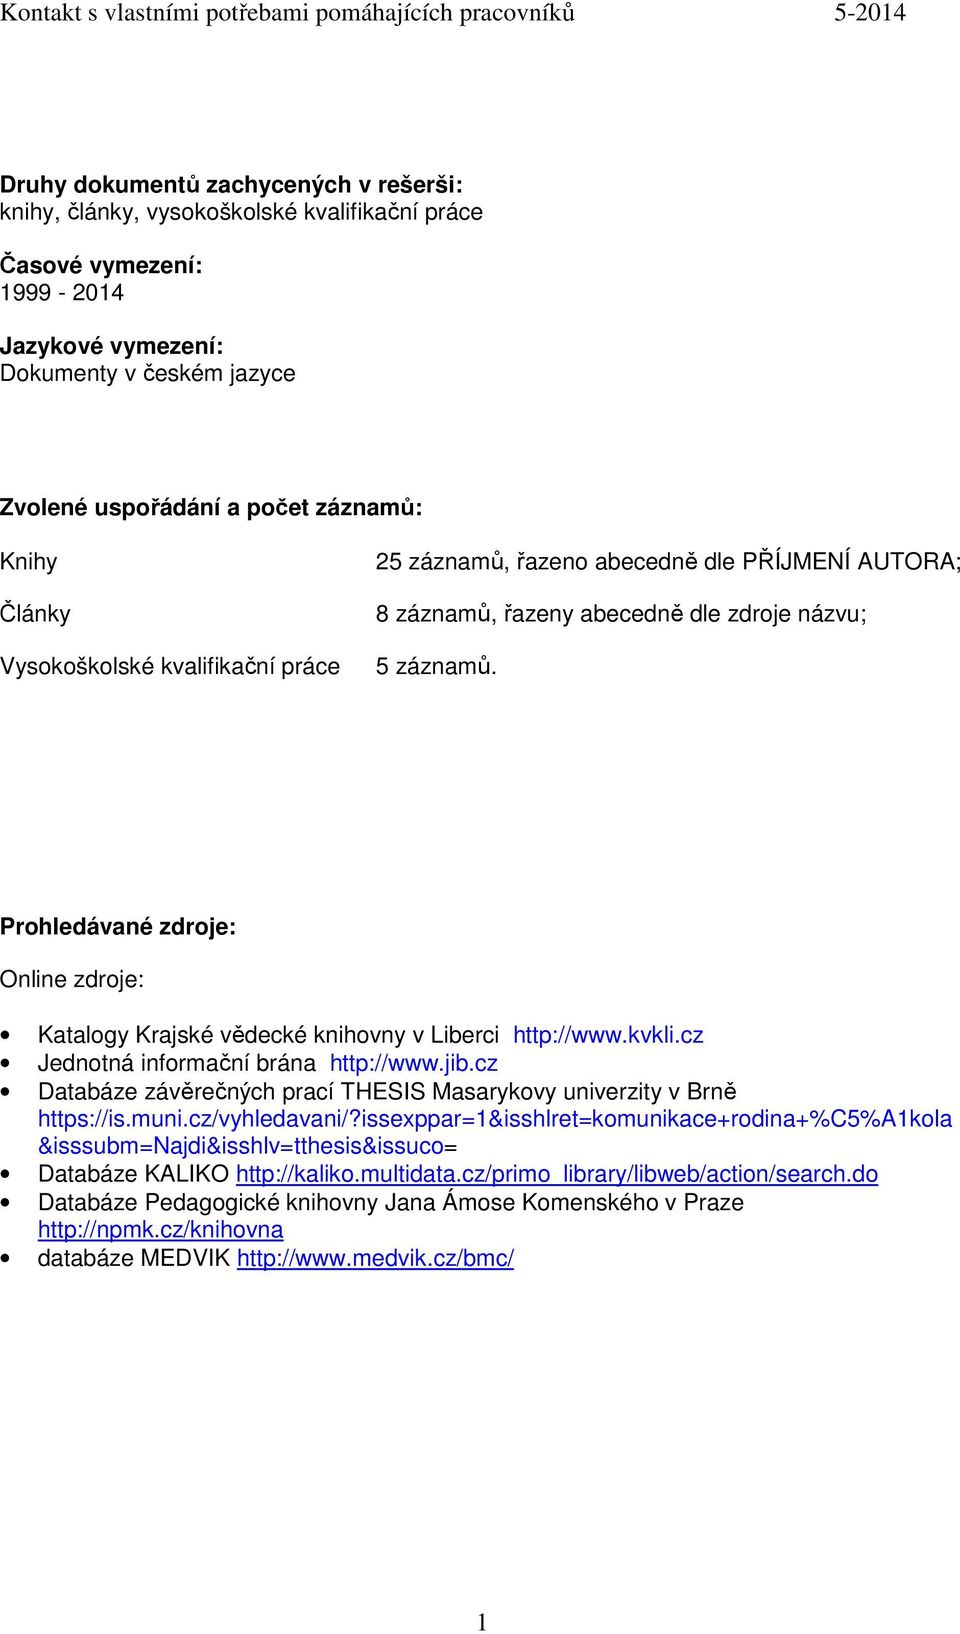 Prohledávané zdroje: Online zdroje: Katalogy Krajské vědecké knihovny v Liberci http://www.kvkli.cz Jednotná informační brána http://www.jib.